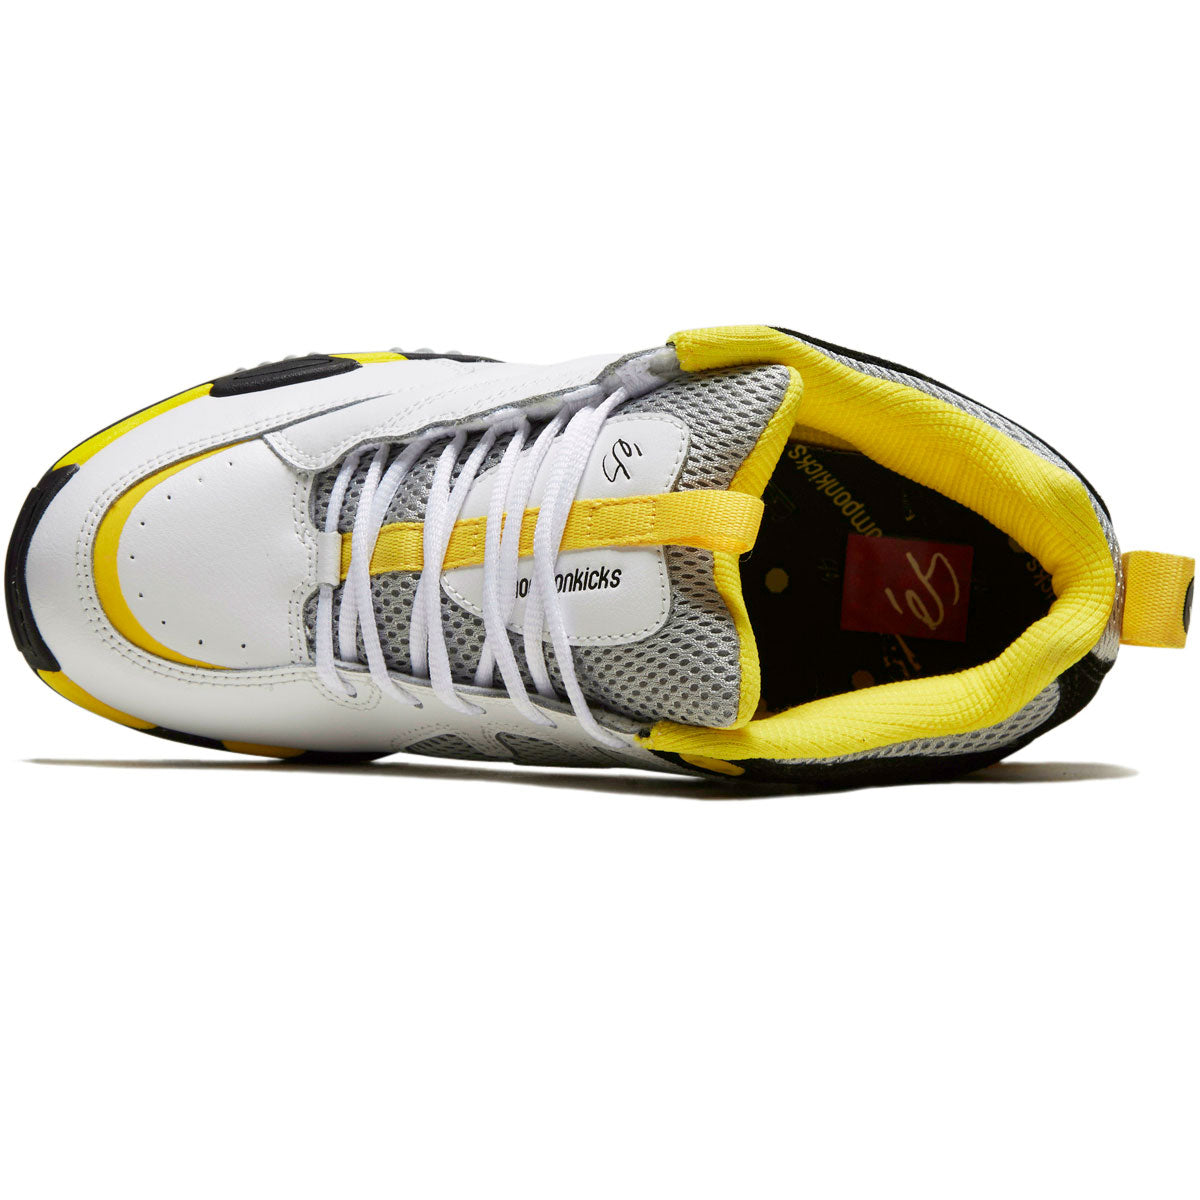 eS x Chomp On Kicks Tribo x Vireo Shoes - White/Black/Yellow image 3